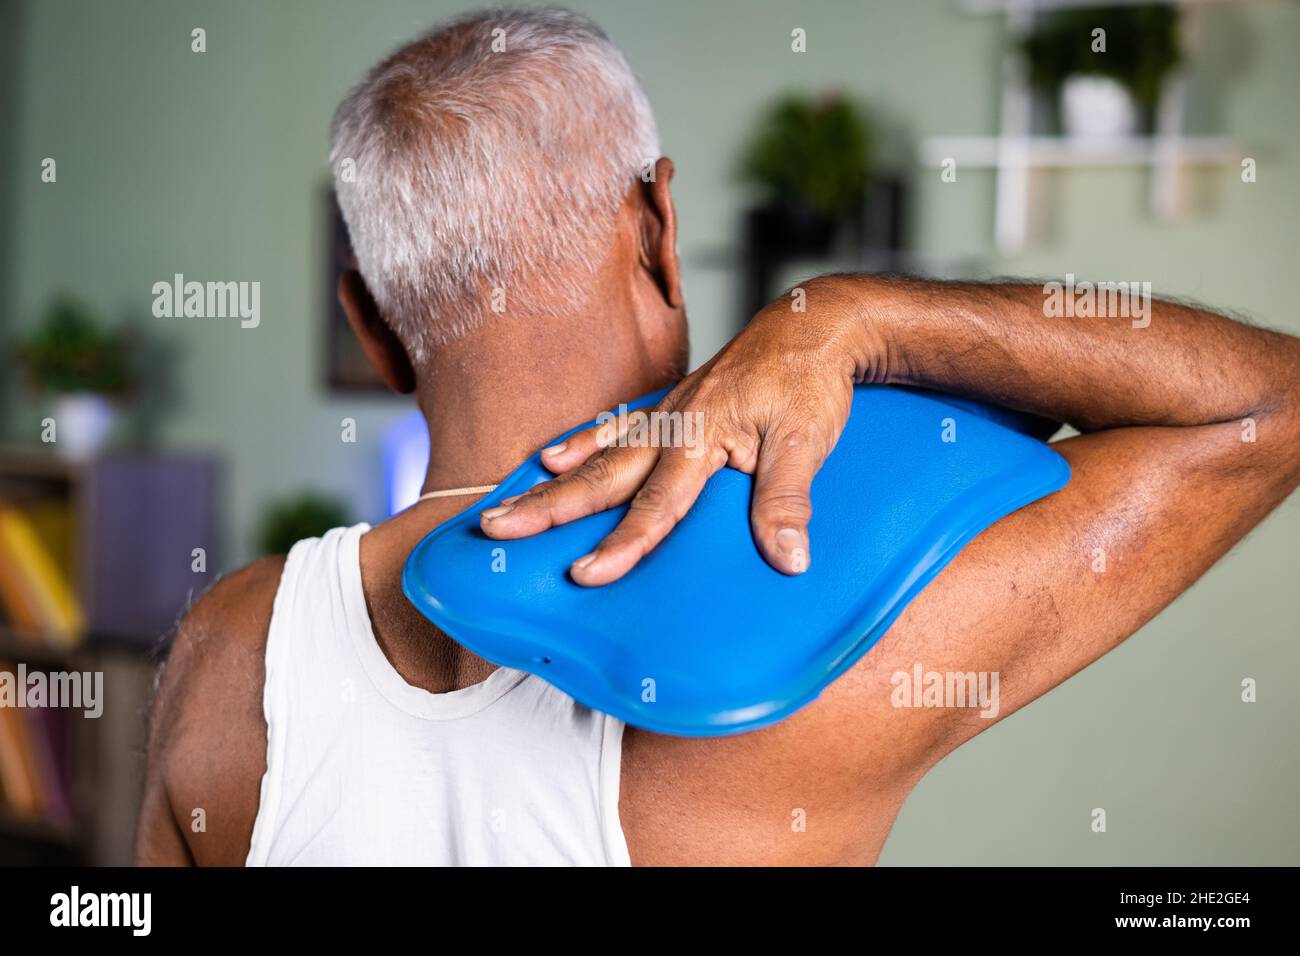 Vue arrière de l'homme ancien utilisant le sac d'eau chaude pour le soulagement de la douleur de cou - concept de thérapie naturelle d'eau chaude et de relaxation musculaire de la maison Banque D'Images